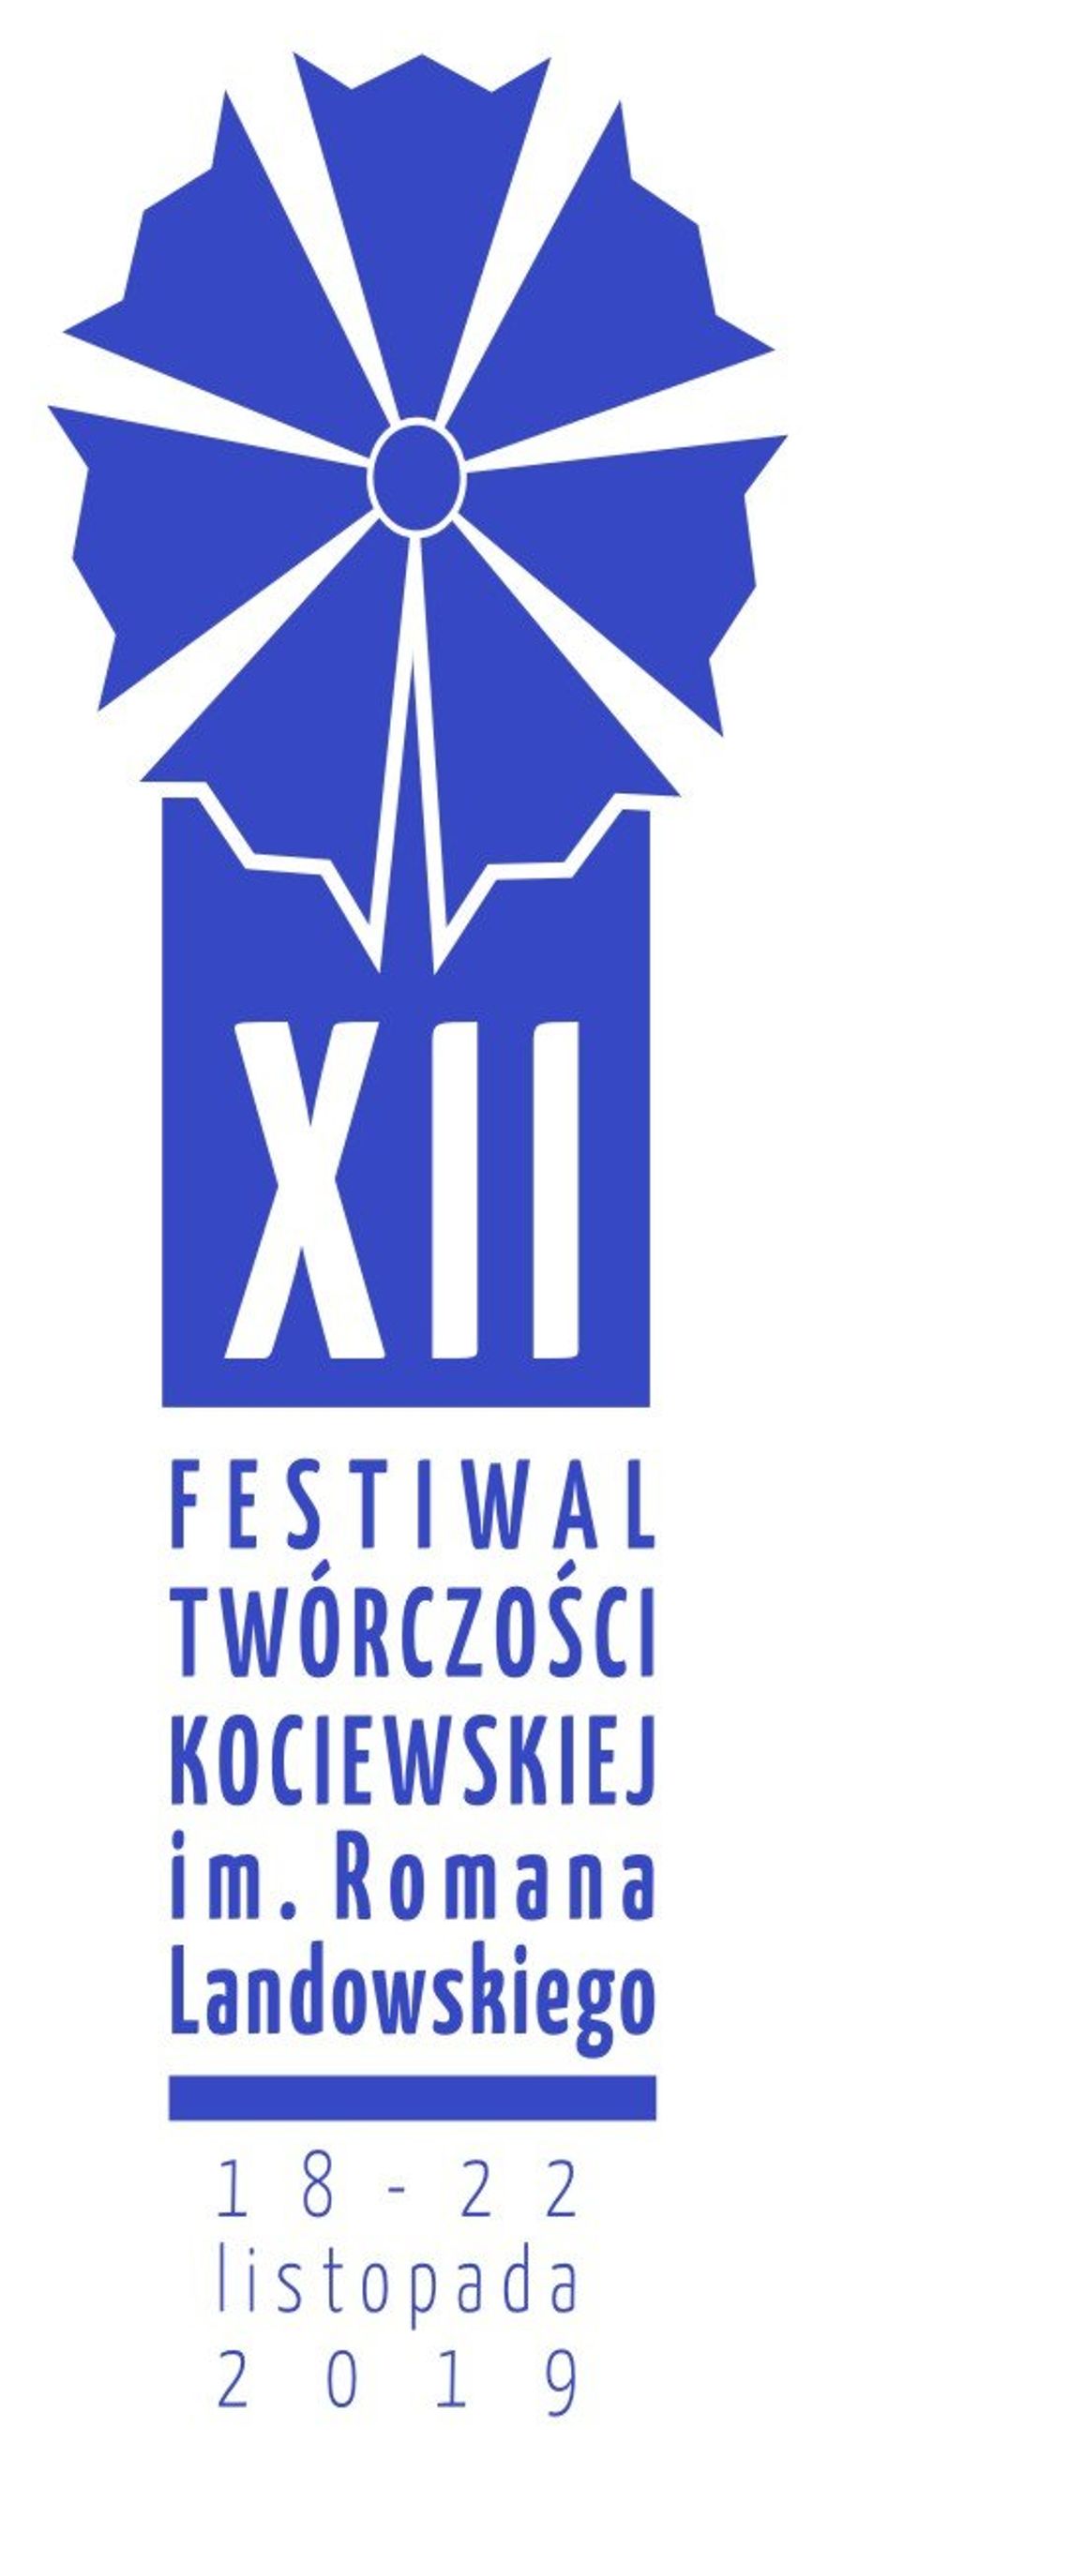 XII Festiwal Twórczości Kociewskiej im. Romana Landowskiego